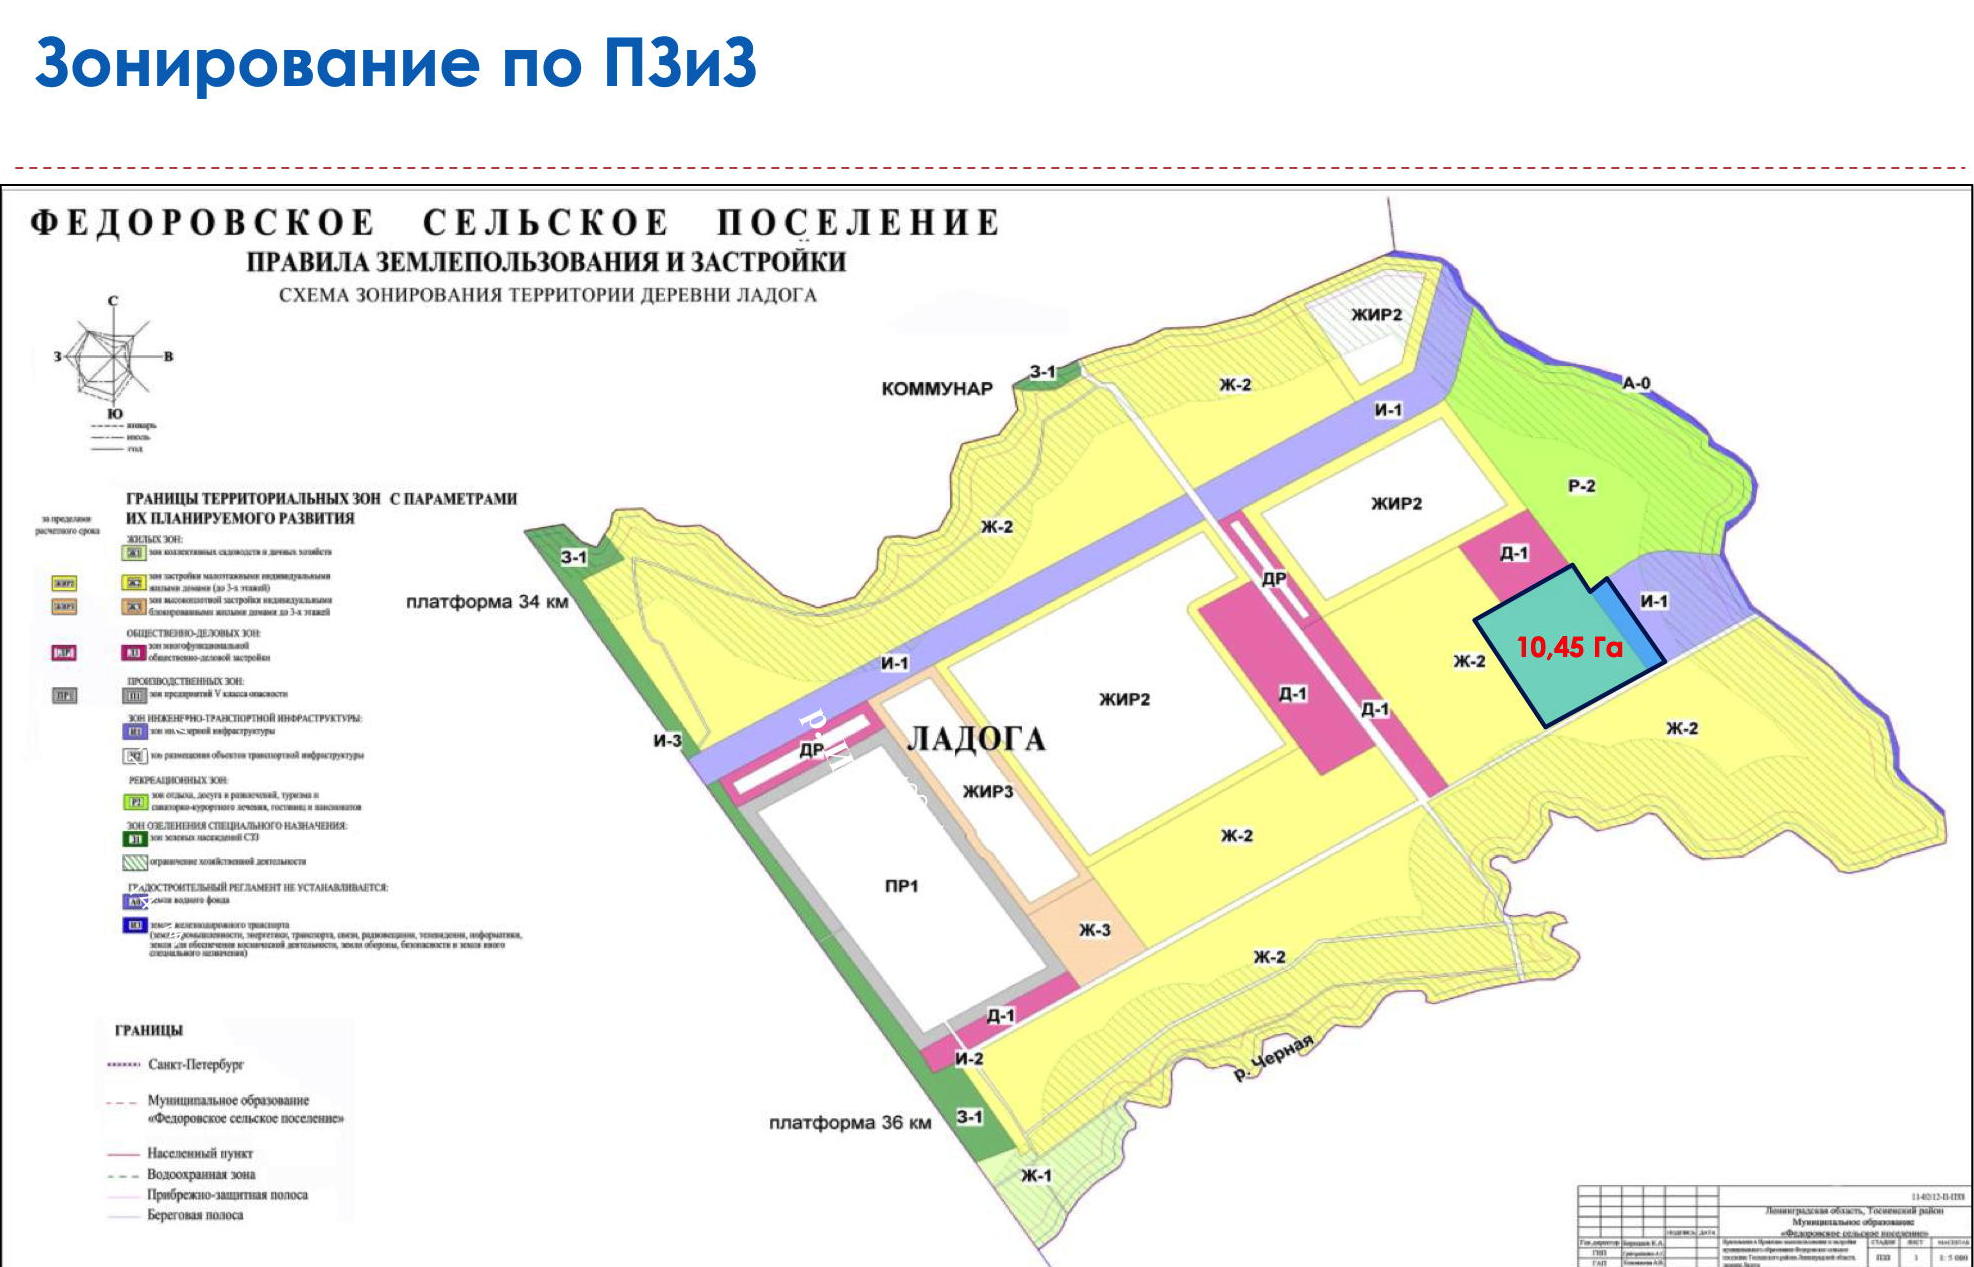 Карта функциональных зон поселения Федоровского